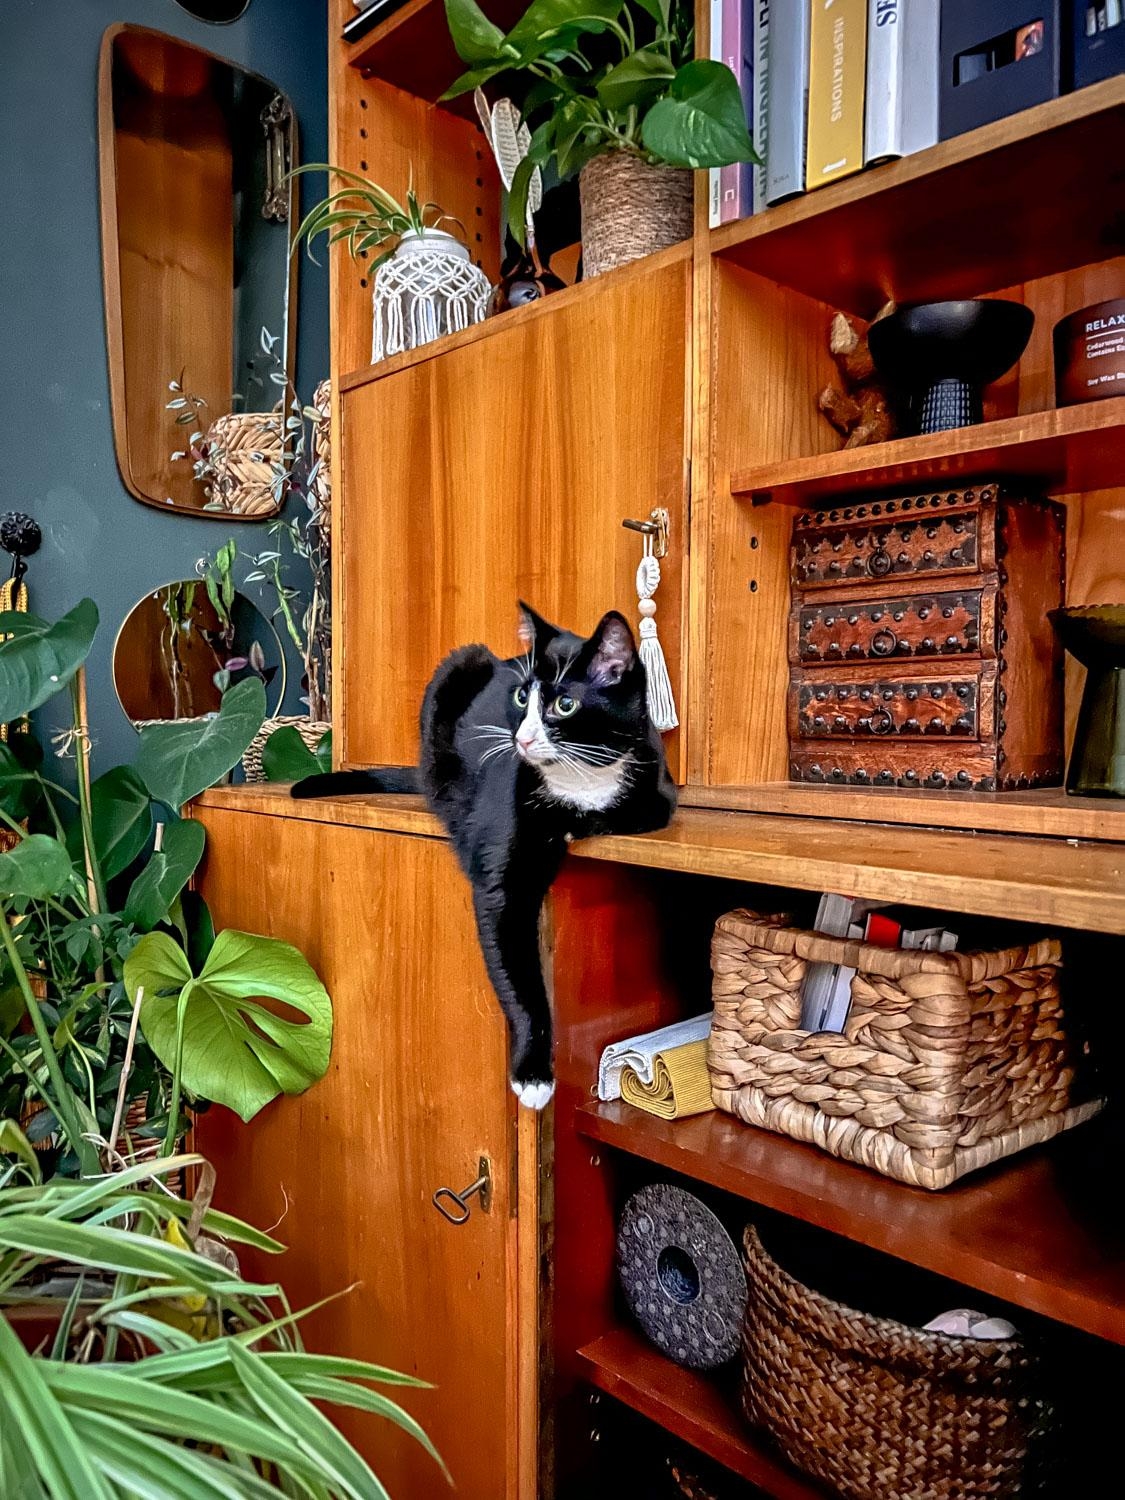 Freddy, das Tuxedo Meowdel. Auf meinem Blog gibts mehr über die Cats #katzenliebe #midcentury #kleinanzeigenfund #cats